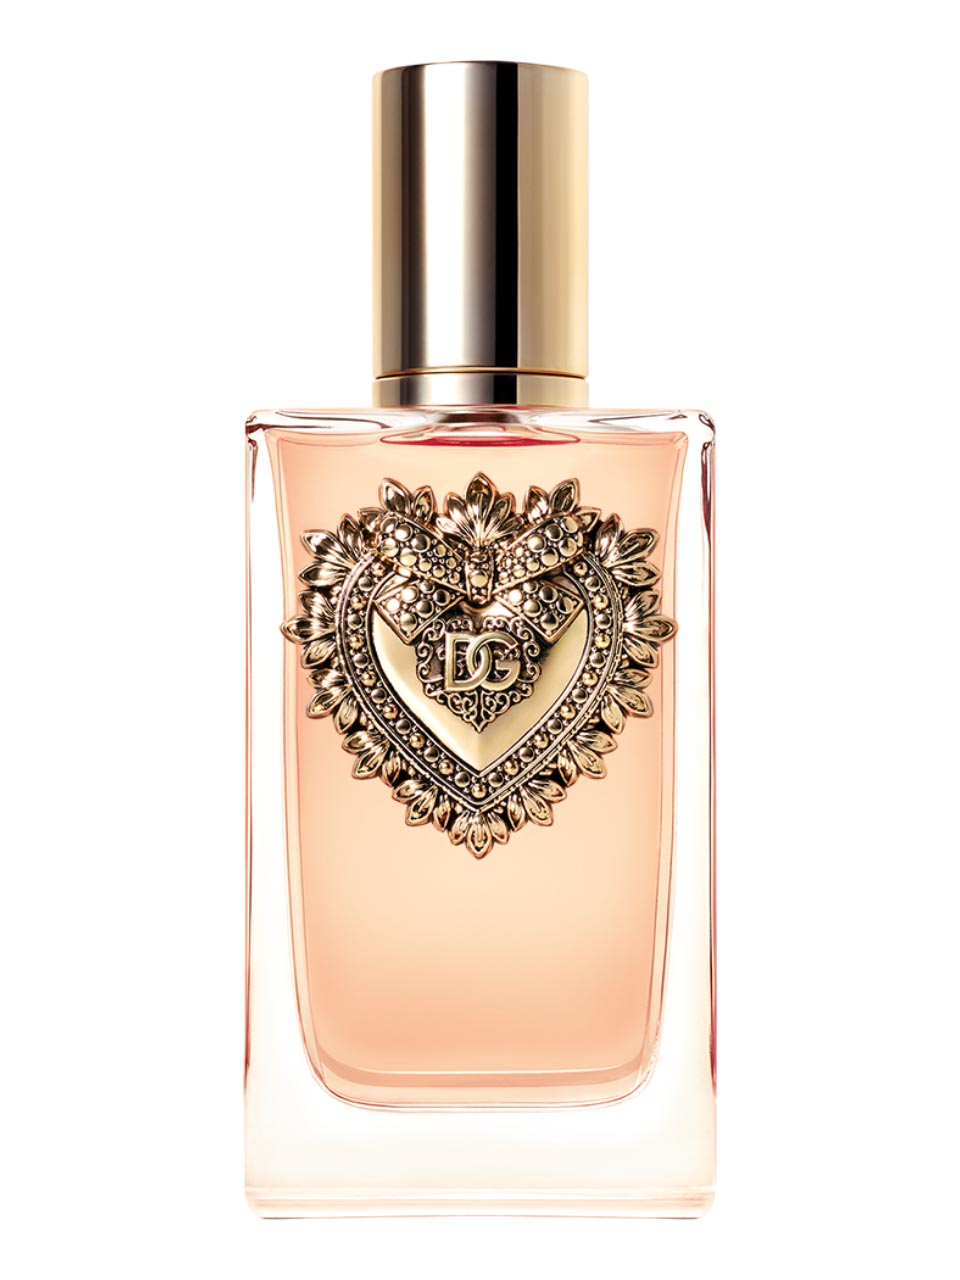 Buy DKNY Perfumes, Online Perfume Store in Nigeria -Best designer